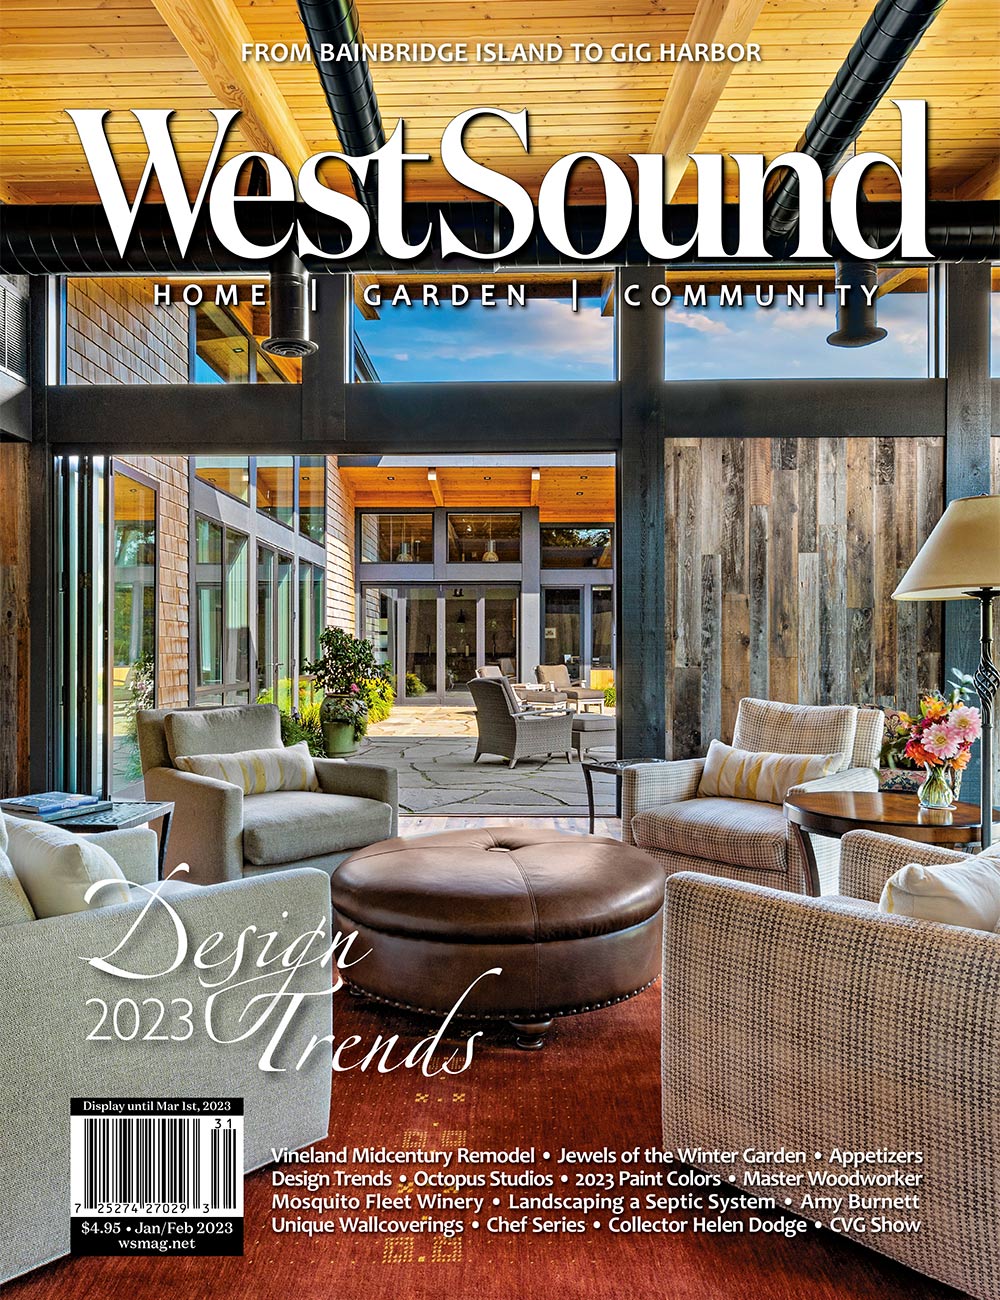 WestSound Magazine